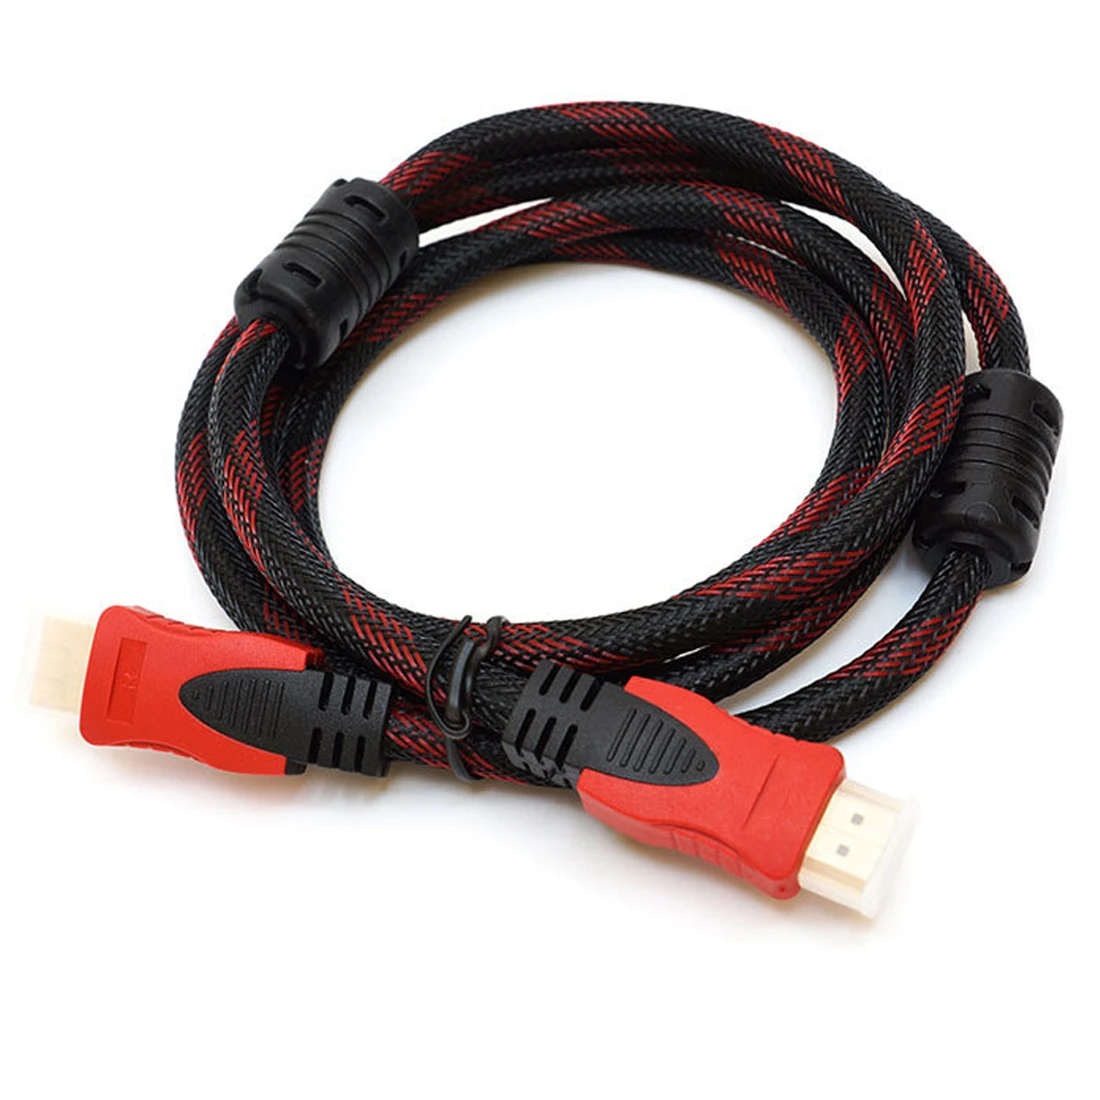 Cable HDMI de velocidad conexión plateada oro cable HDMI a HDMI con rojo y negro de malla de 1080 P/4 K * 2K m 5m 10m 15m 20m|10m cable| hdmi